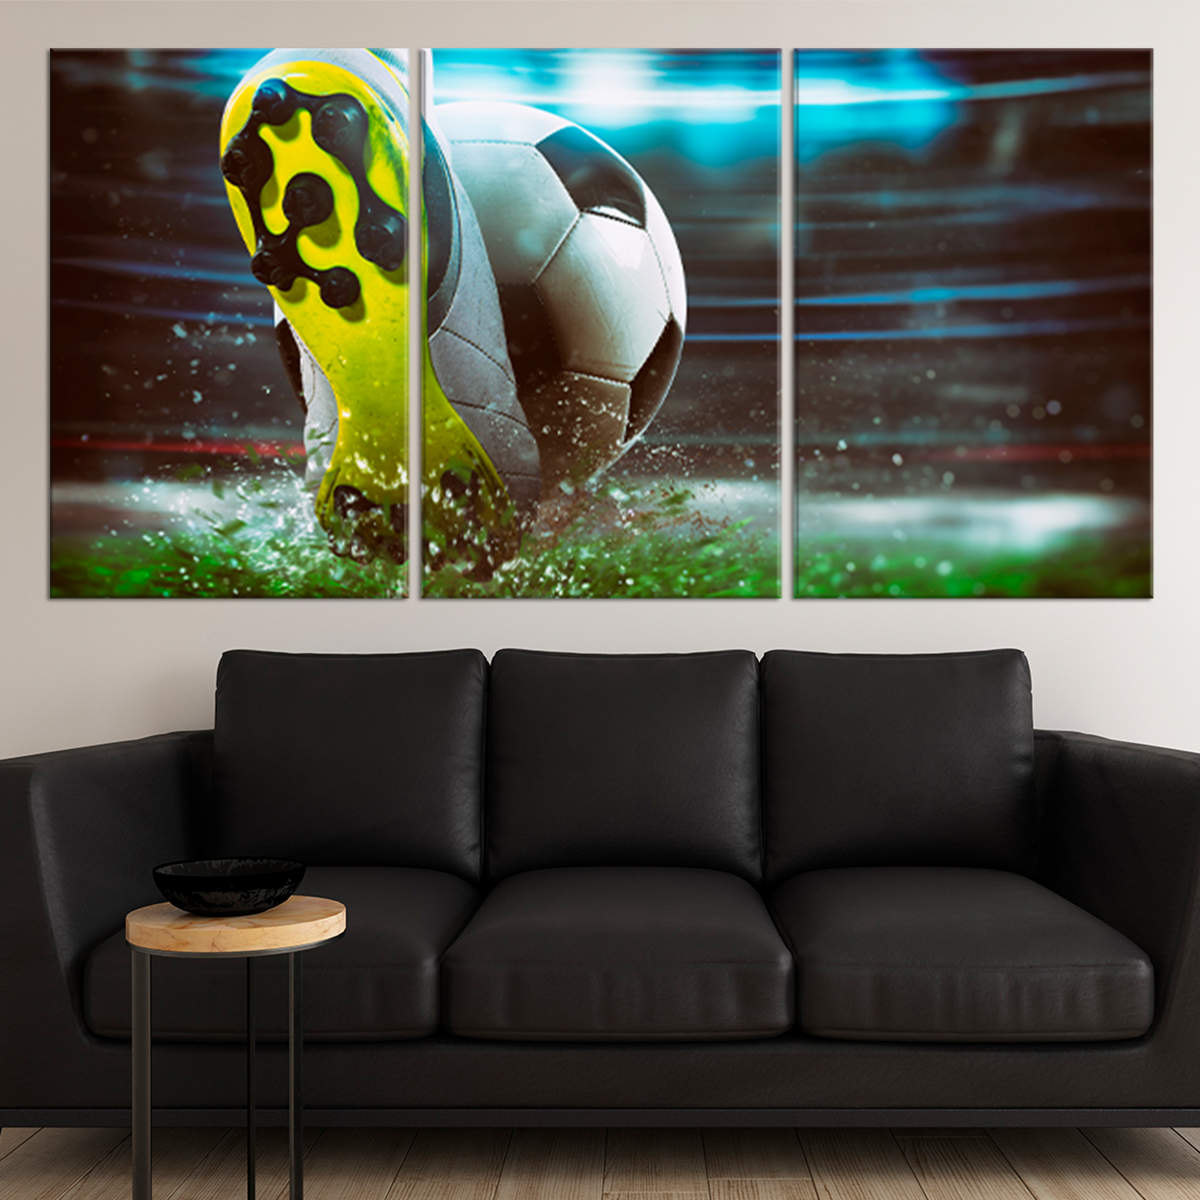 Intense Soccer Game Canvas Wall Art